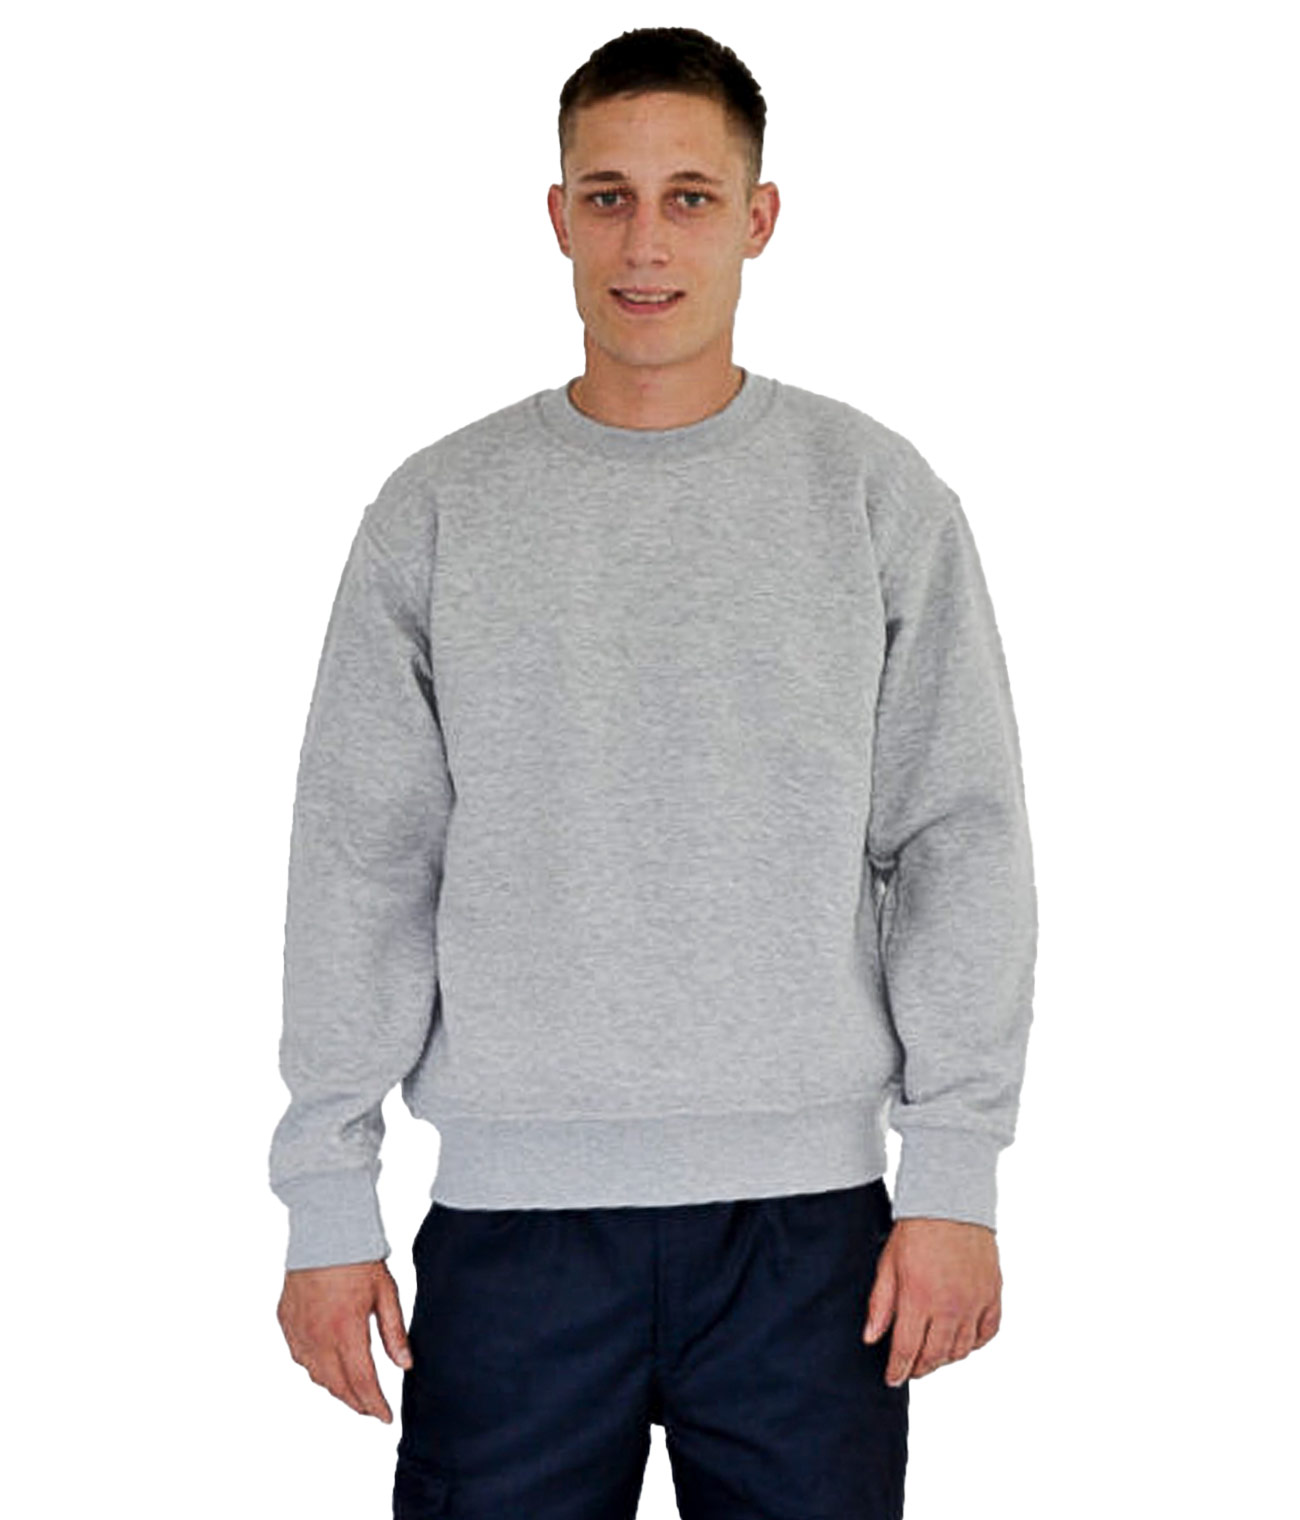 https://www.sportexclothing.com/wp-content/uploads/2022/03/comfort-sweatshirt.jpg